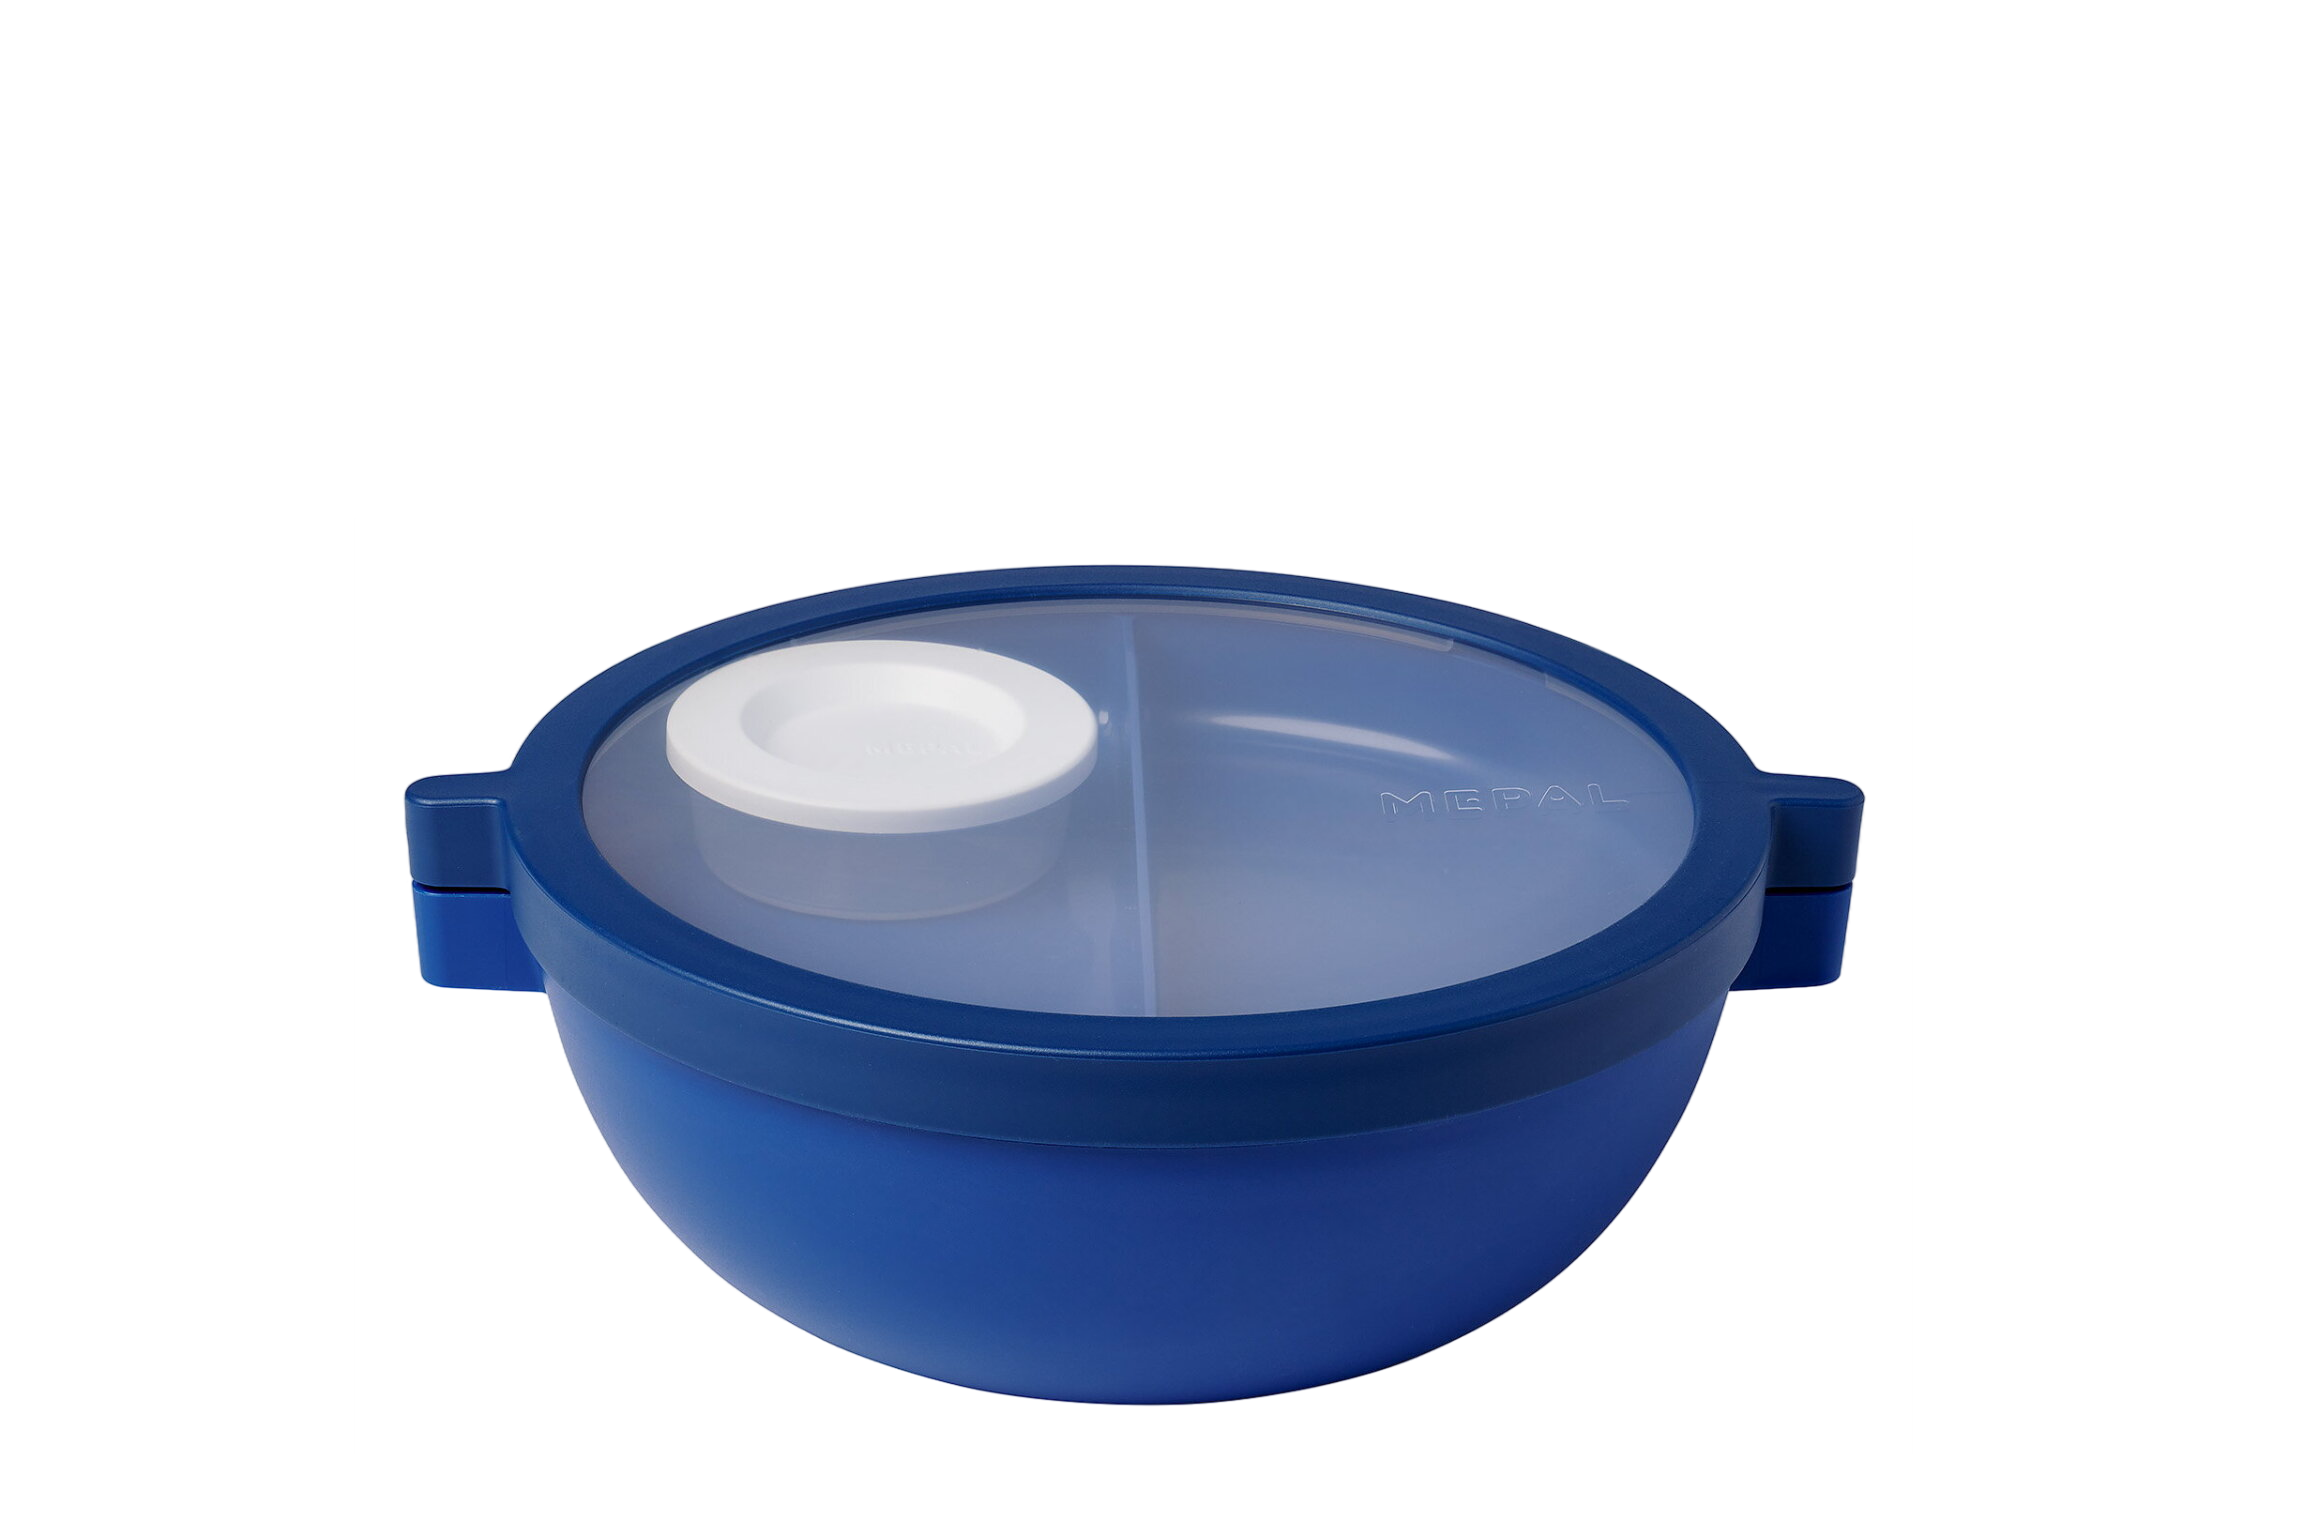 Mepal Vita bento lunchbowl – 5 vakken waarvan 3 uitneembare bakjes – Bento box – Salade lunchbox – Vivid blue